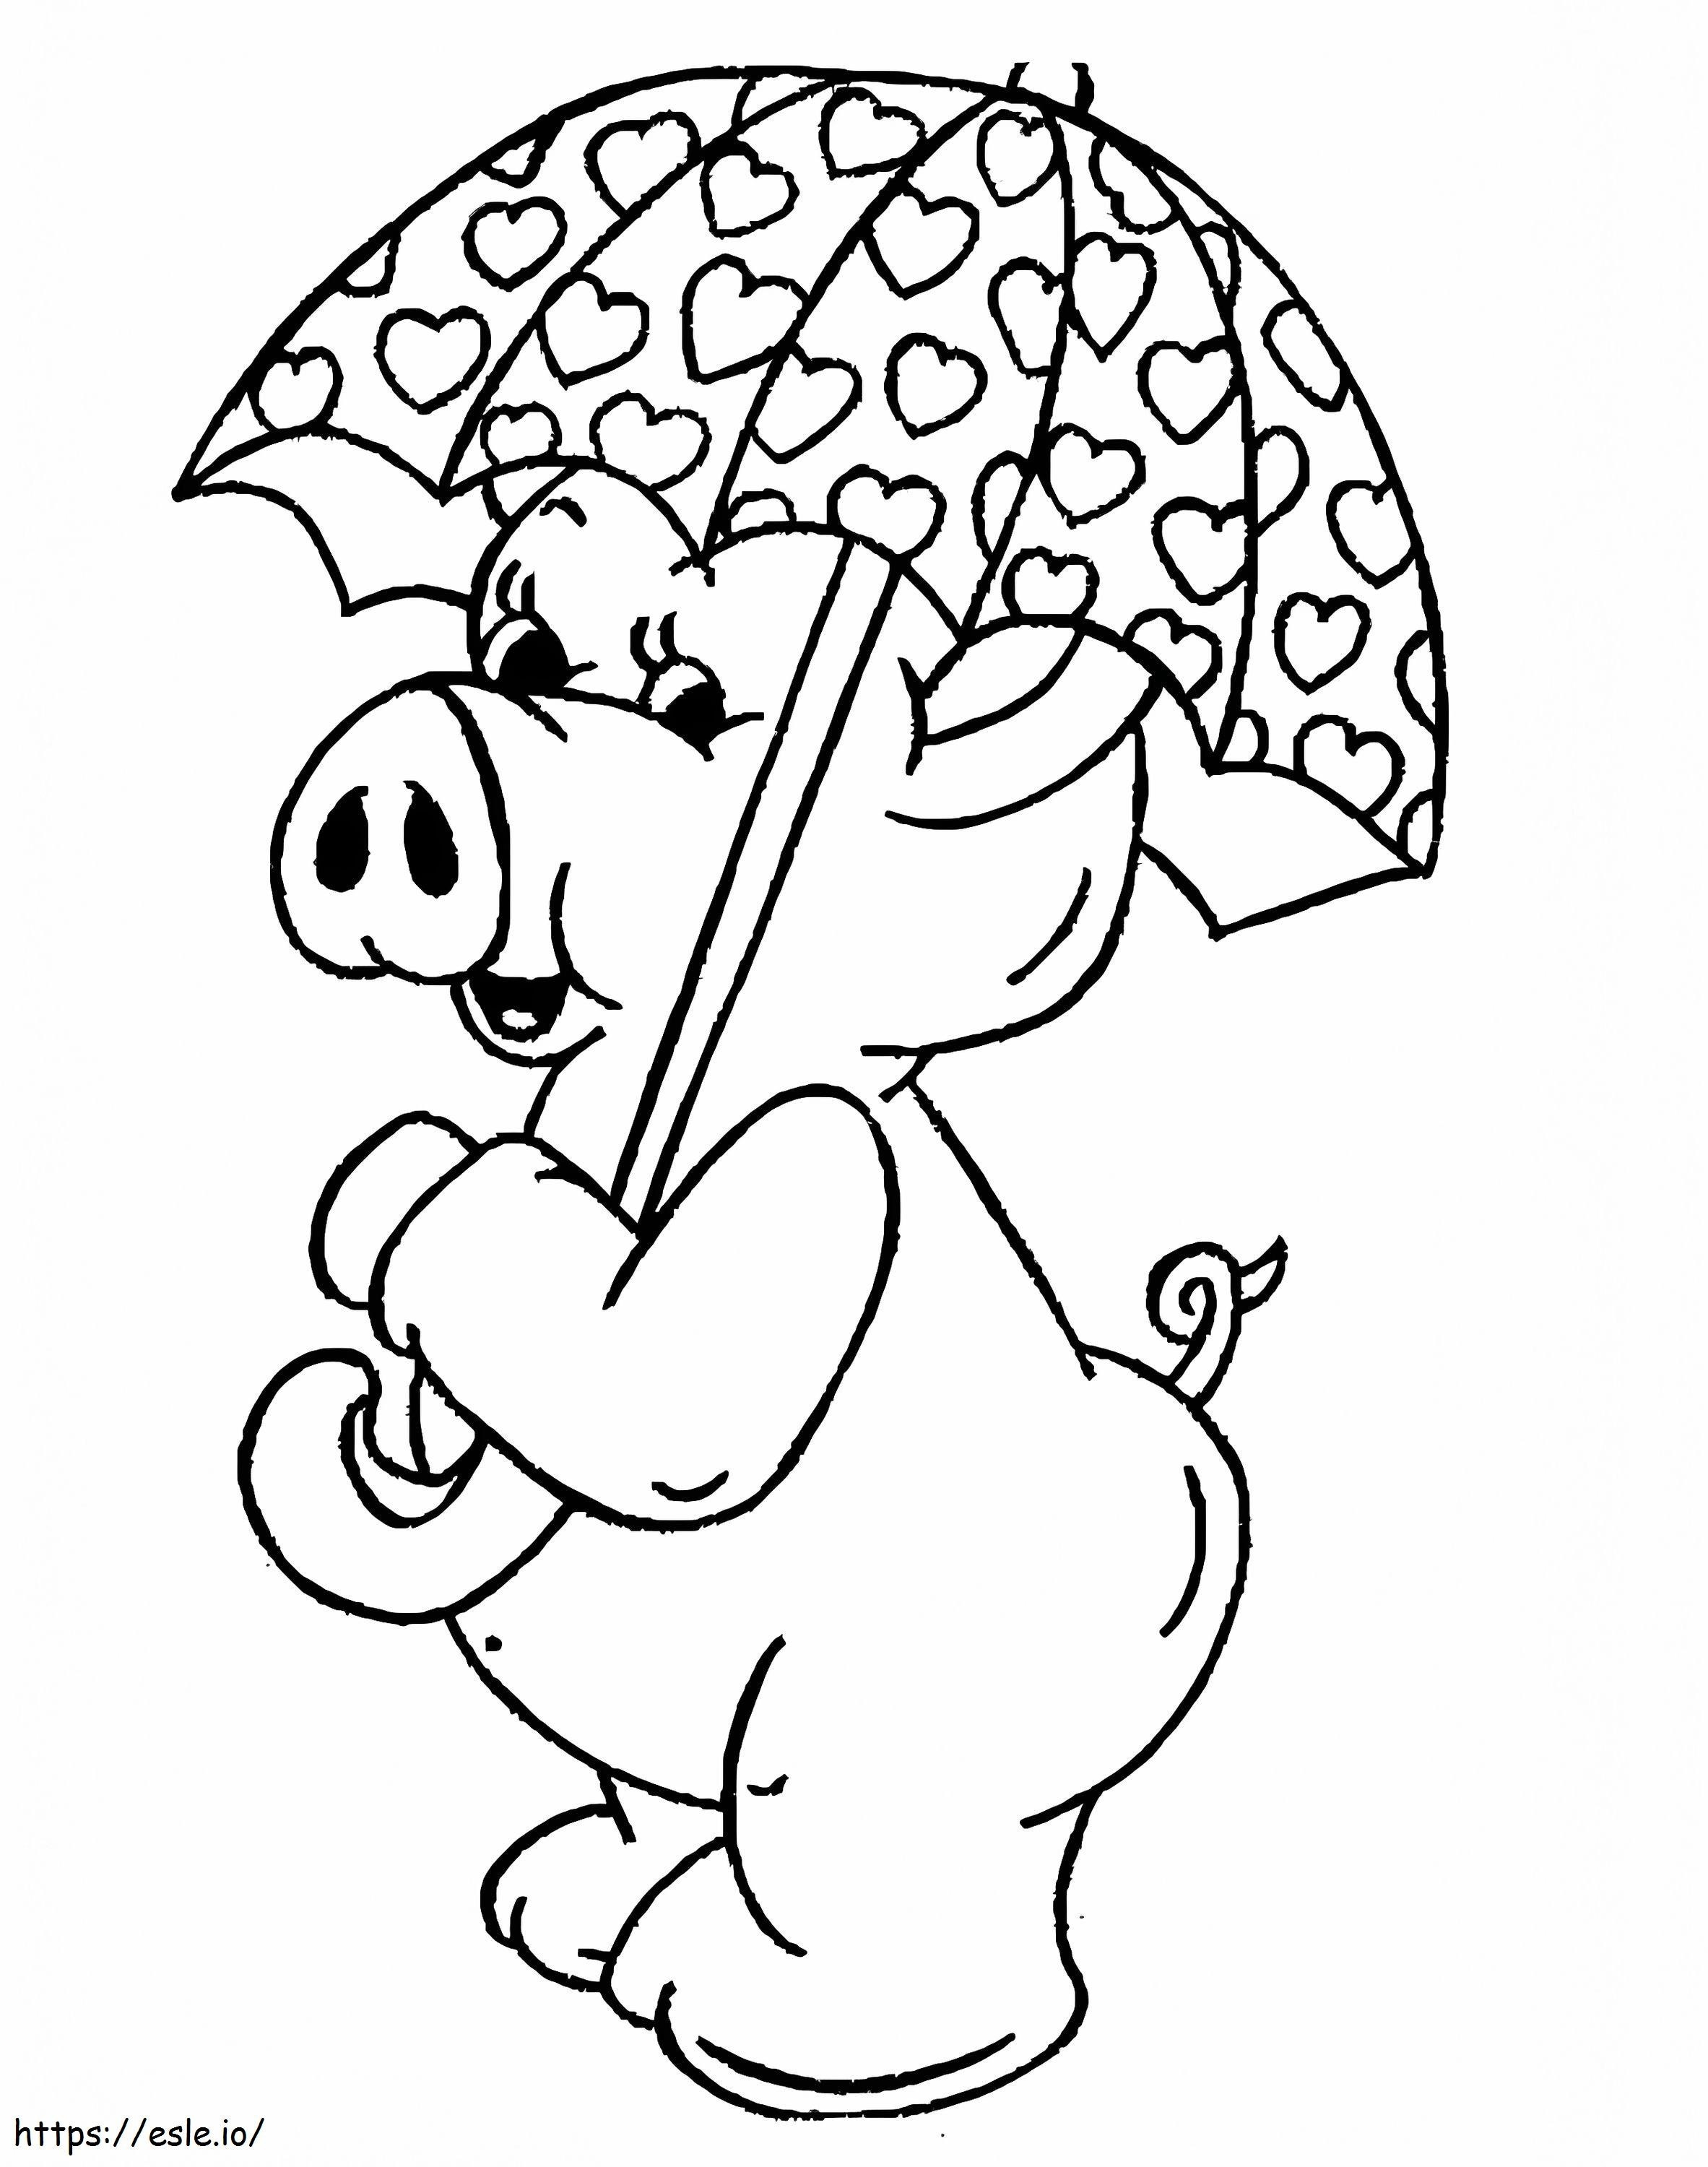 Schwein mit Regenschirm ausmalbilder